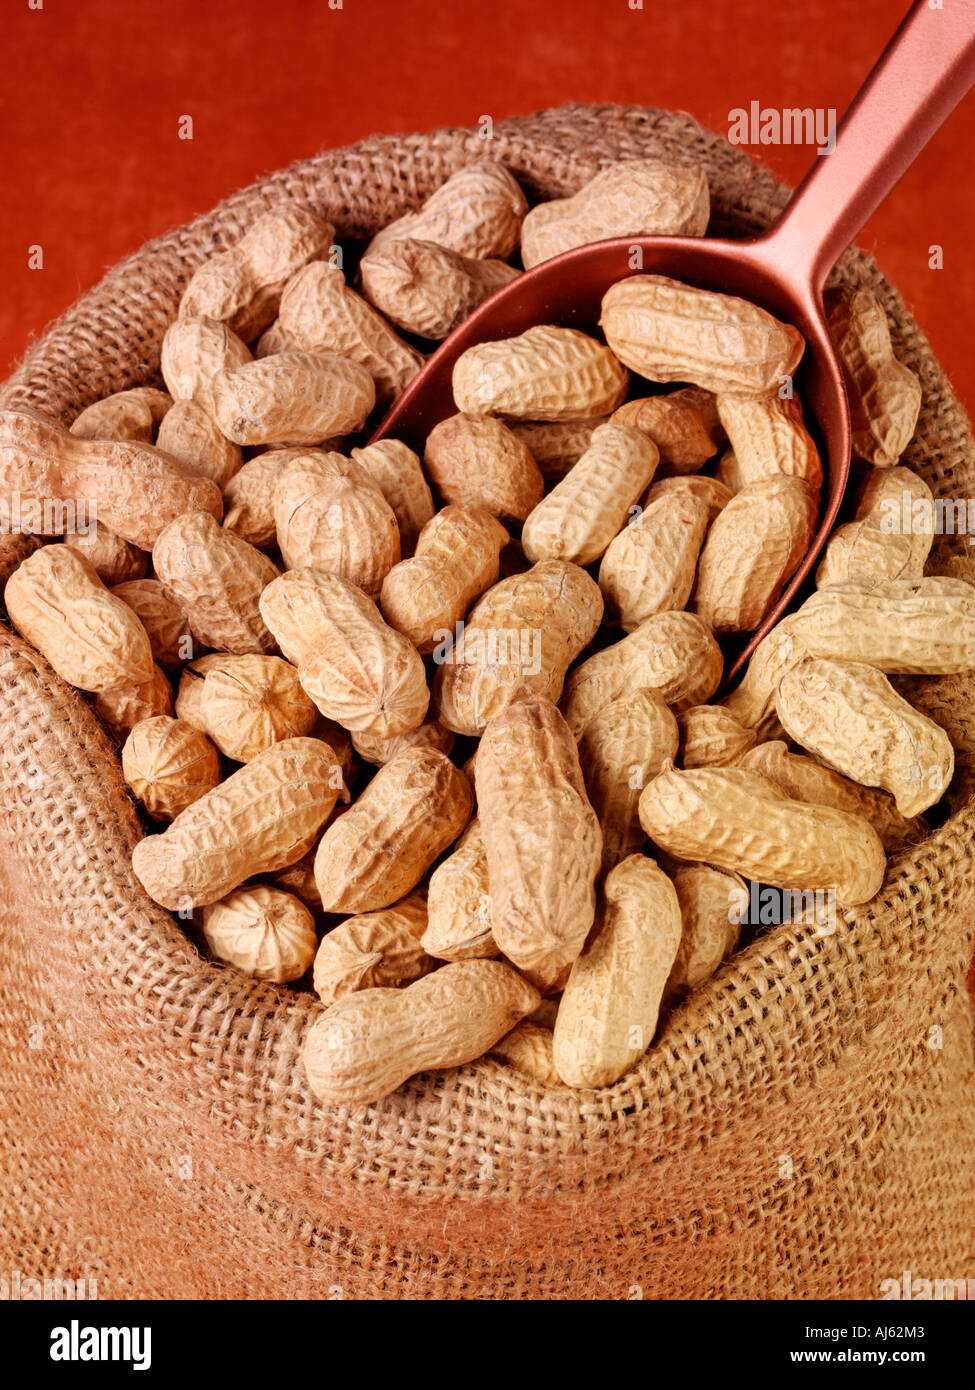 SACK OF MONKEY NUTS Stock Photo